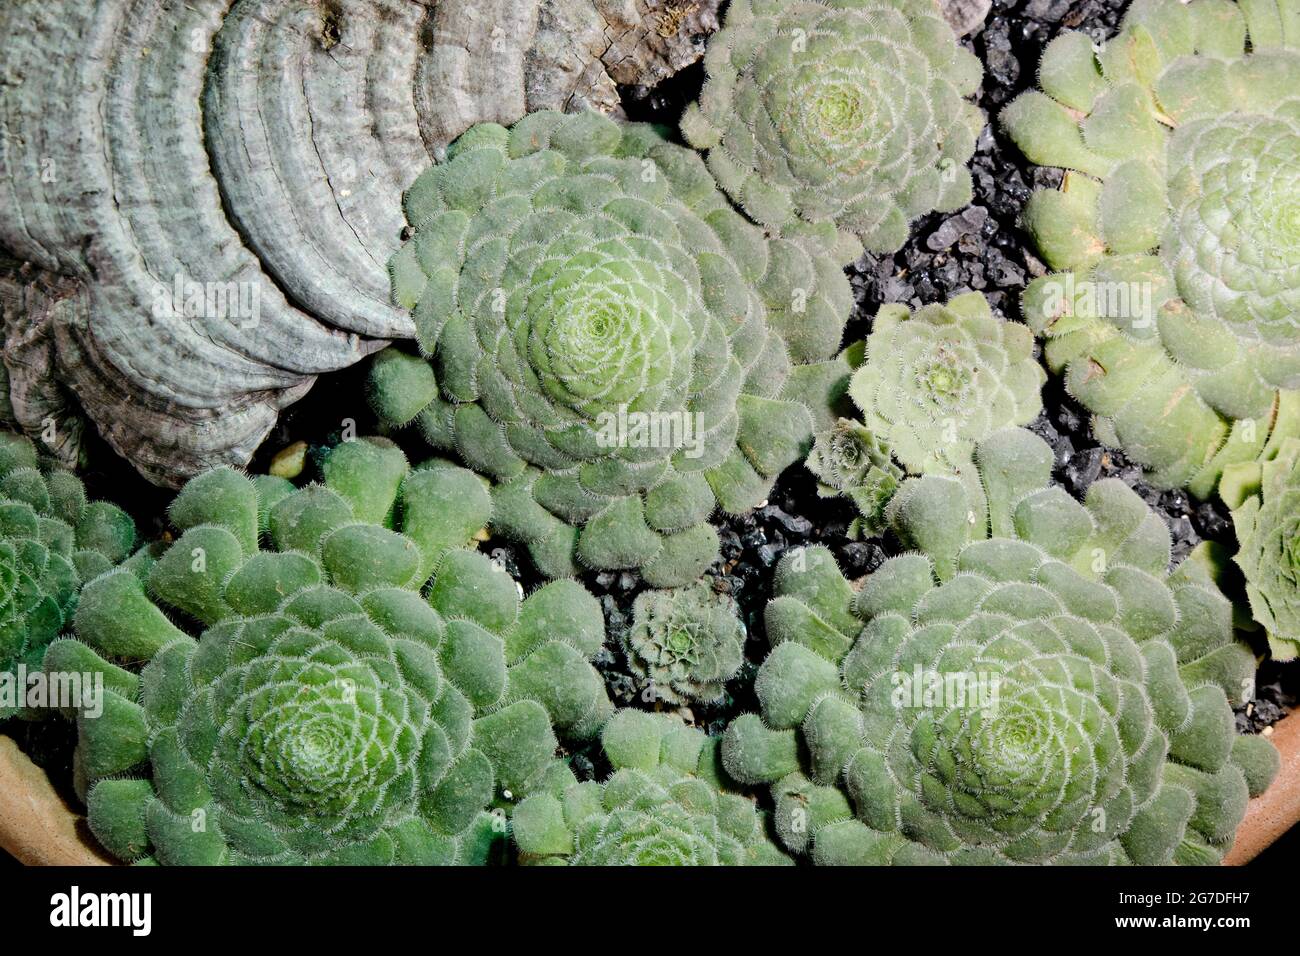 Aeonium closeup. Succulent plant background Stock Photo